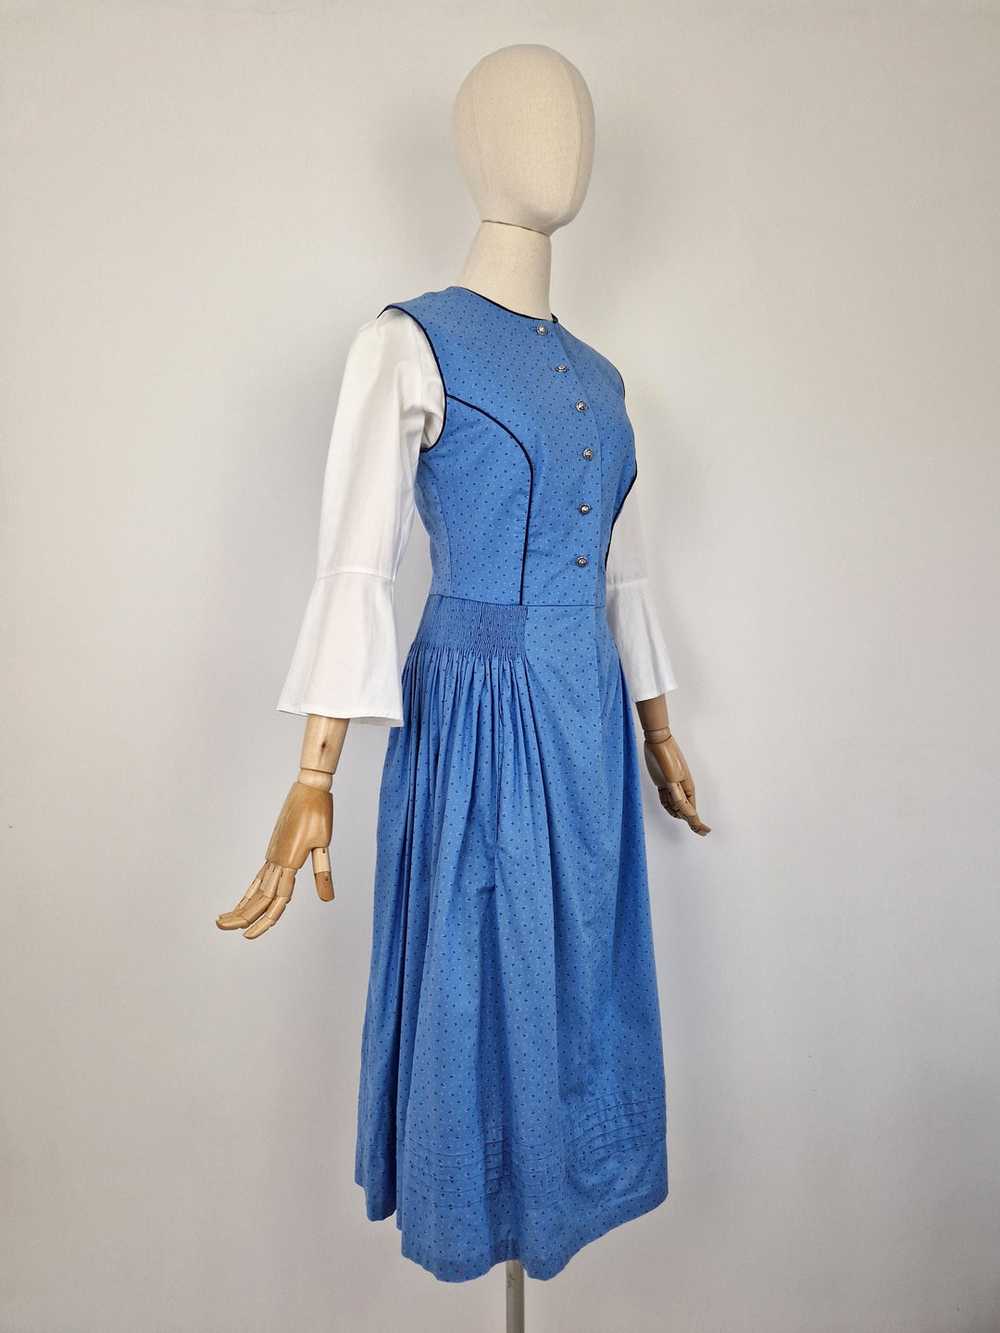 Vintage blue dirndl dress - image 2